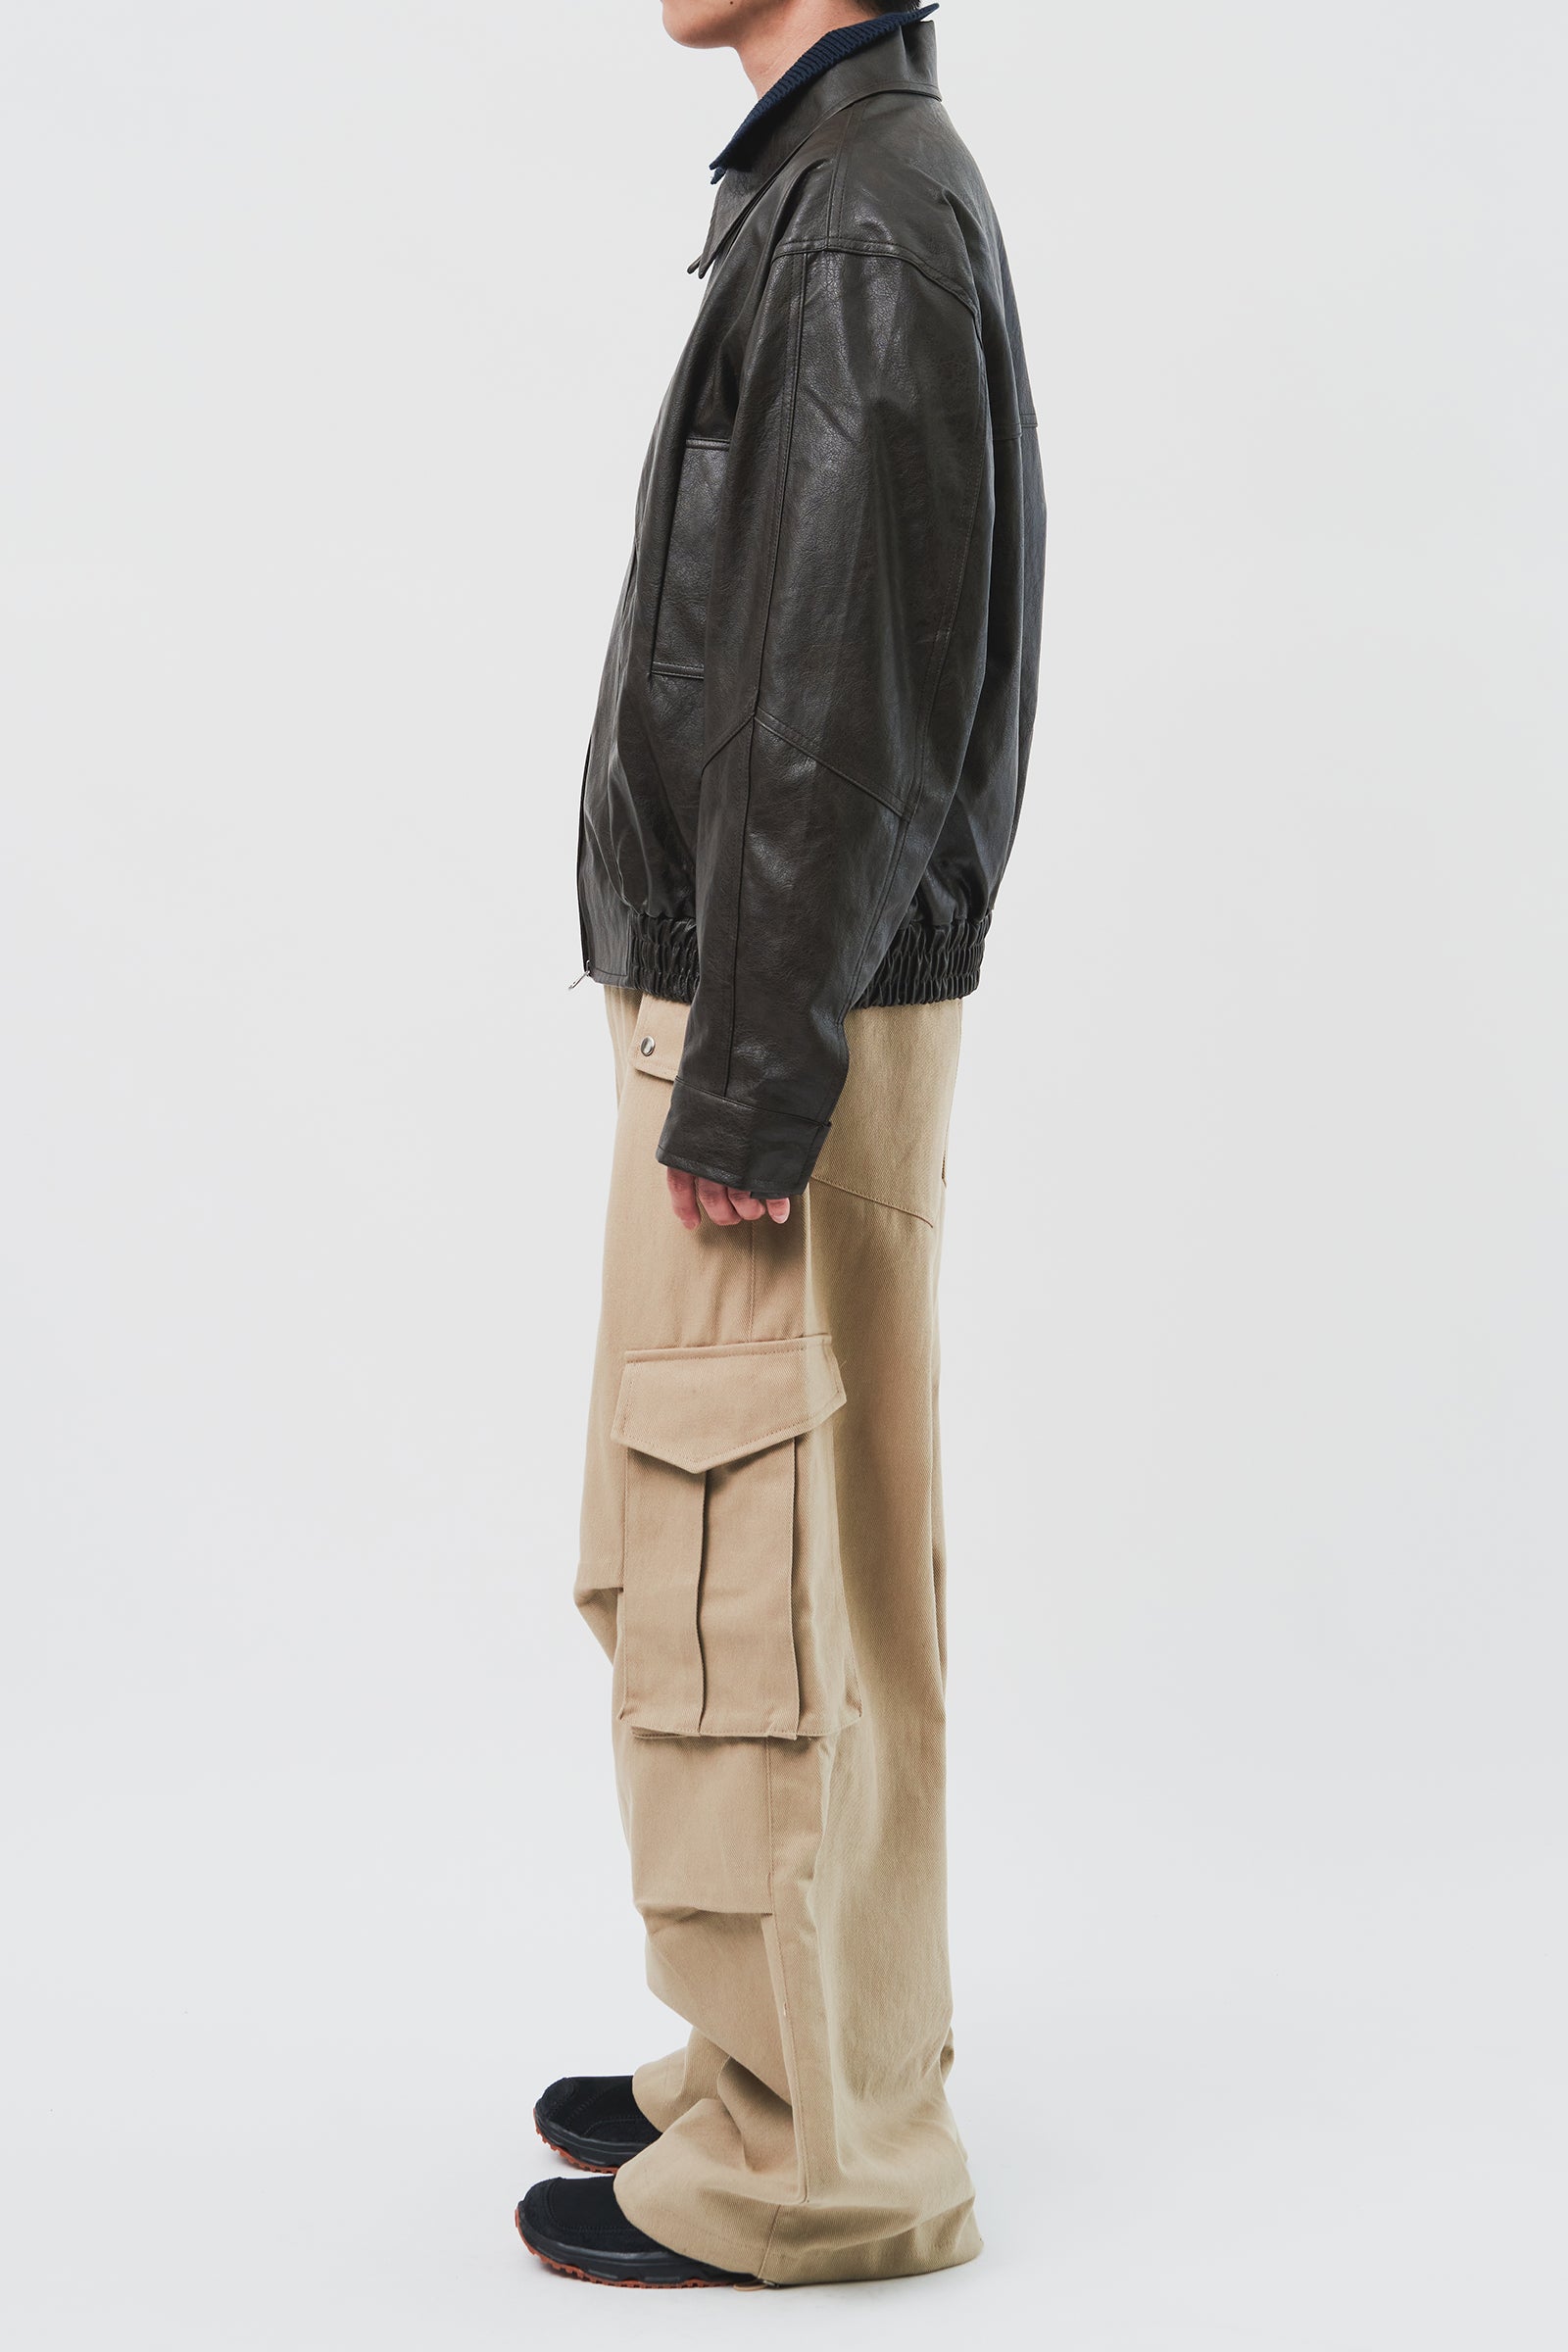 Charles Vegan Leather Jacket (3color)